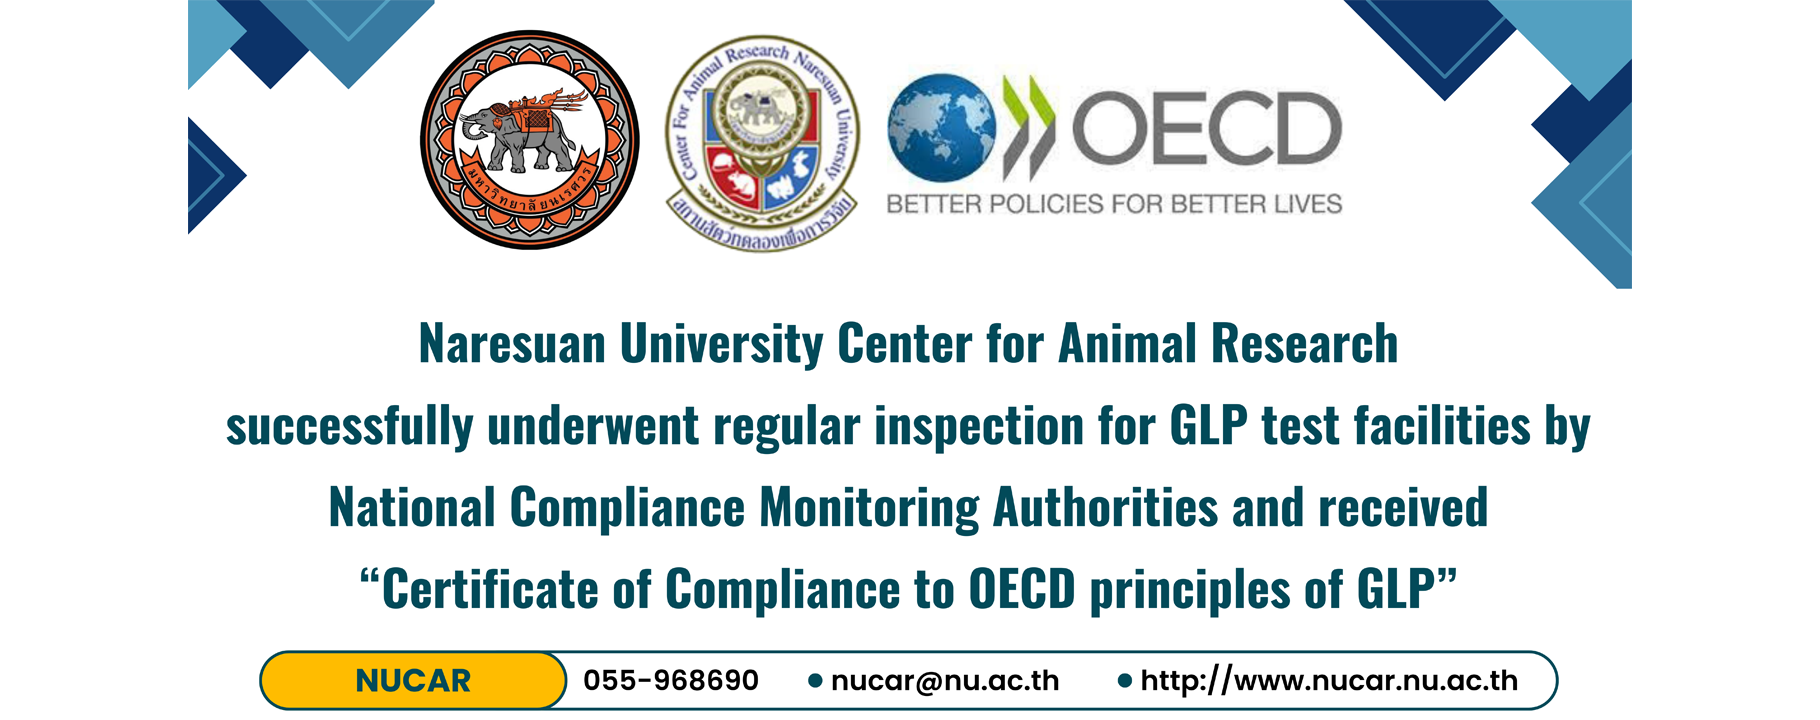 สถานสัตว์ทดลองเพื่อการวิจัย มหาวิทยาลัยนเรศวร ได้รับการรับรองในการต่ออายุการขึ้นทะเบียนหน่วยศึกษาวิจัย/พัฒนา (Test Facility Inspection) ที่ดำเนินการสอดคล้องตามหลักการ OECD GLP (OECD GLP Compliance)